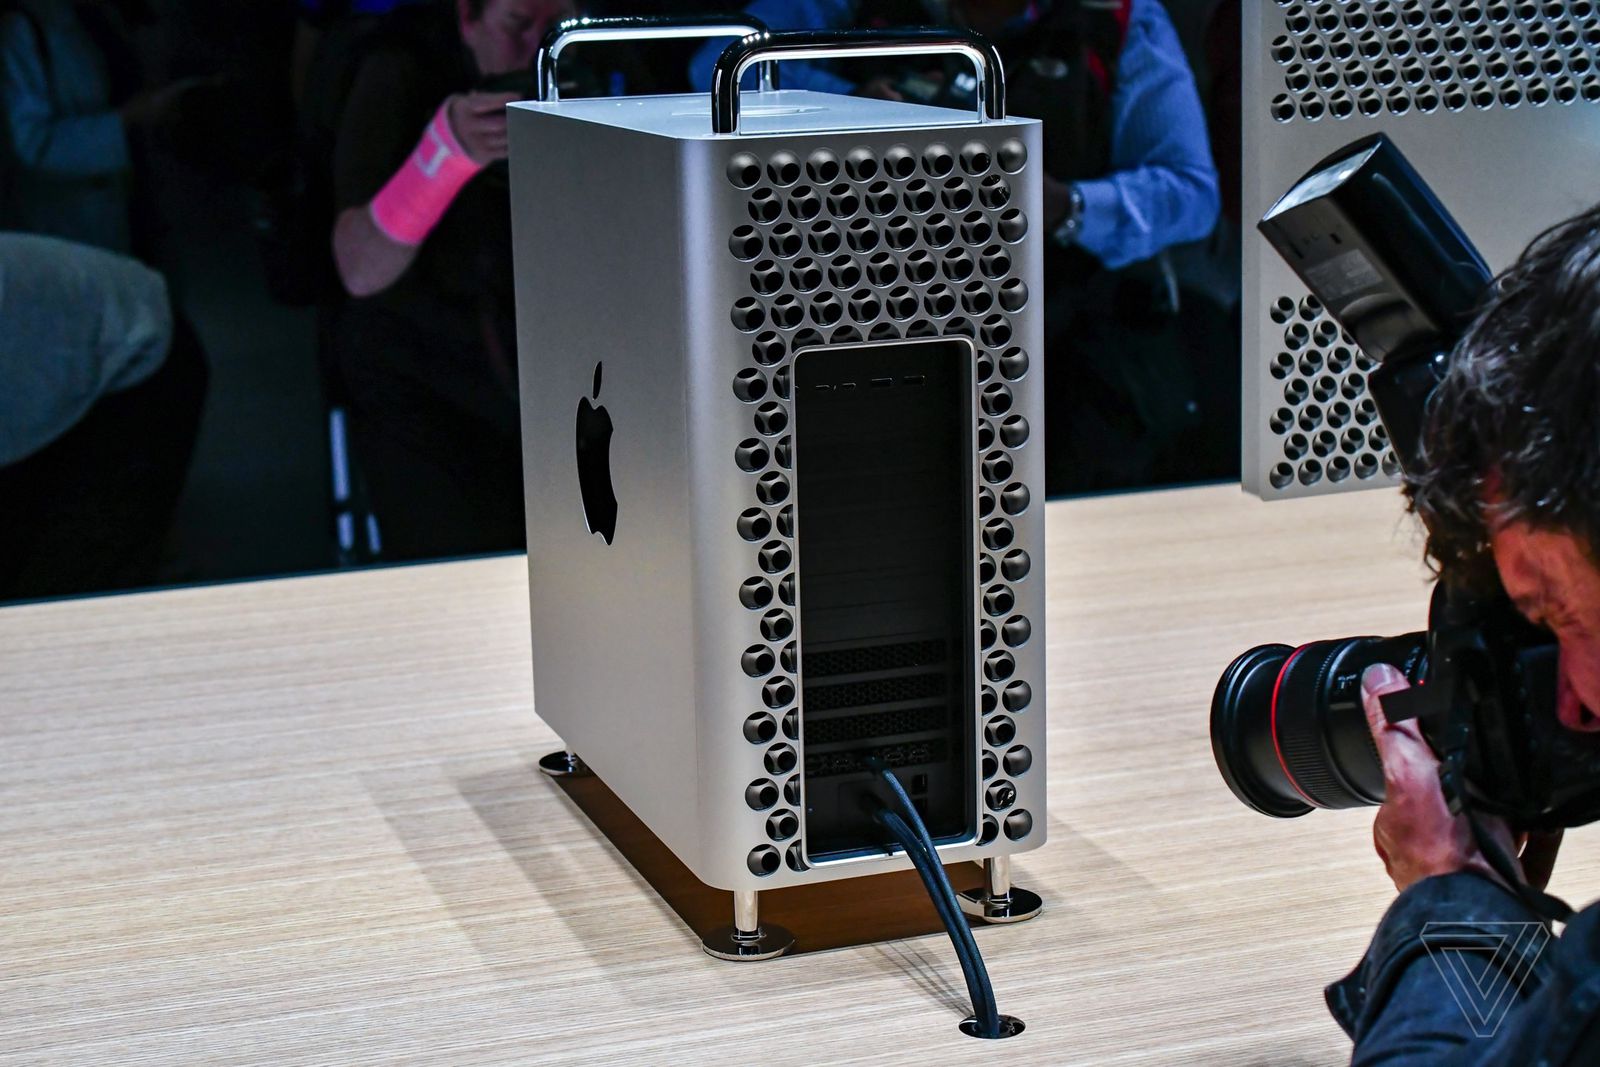 Apple quay lại thiết kế “dụng cụ bào” vì nó dễ nâng cấp hơn